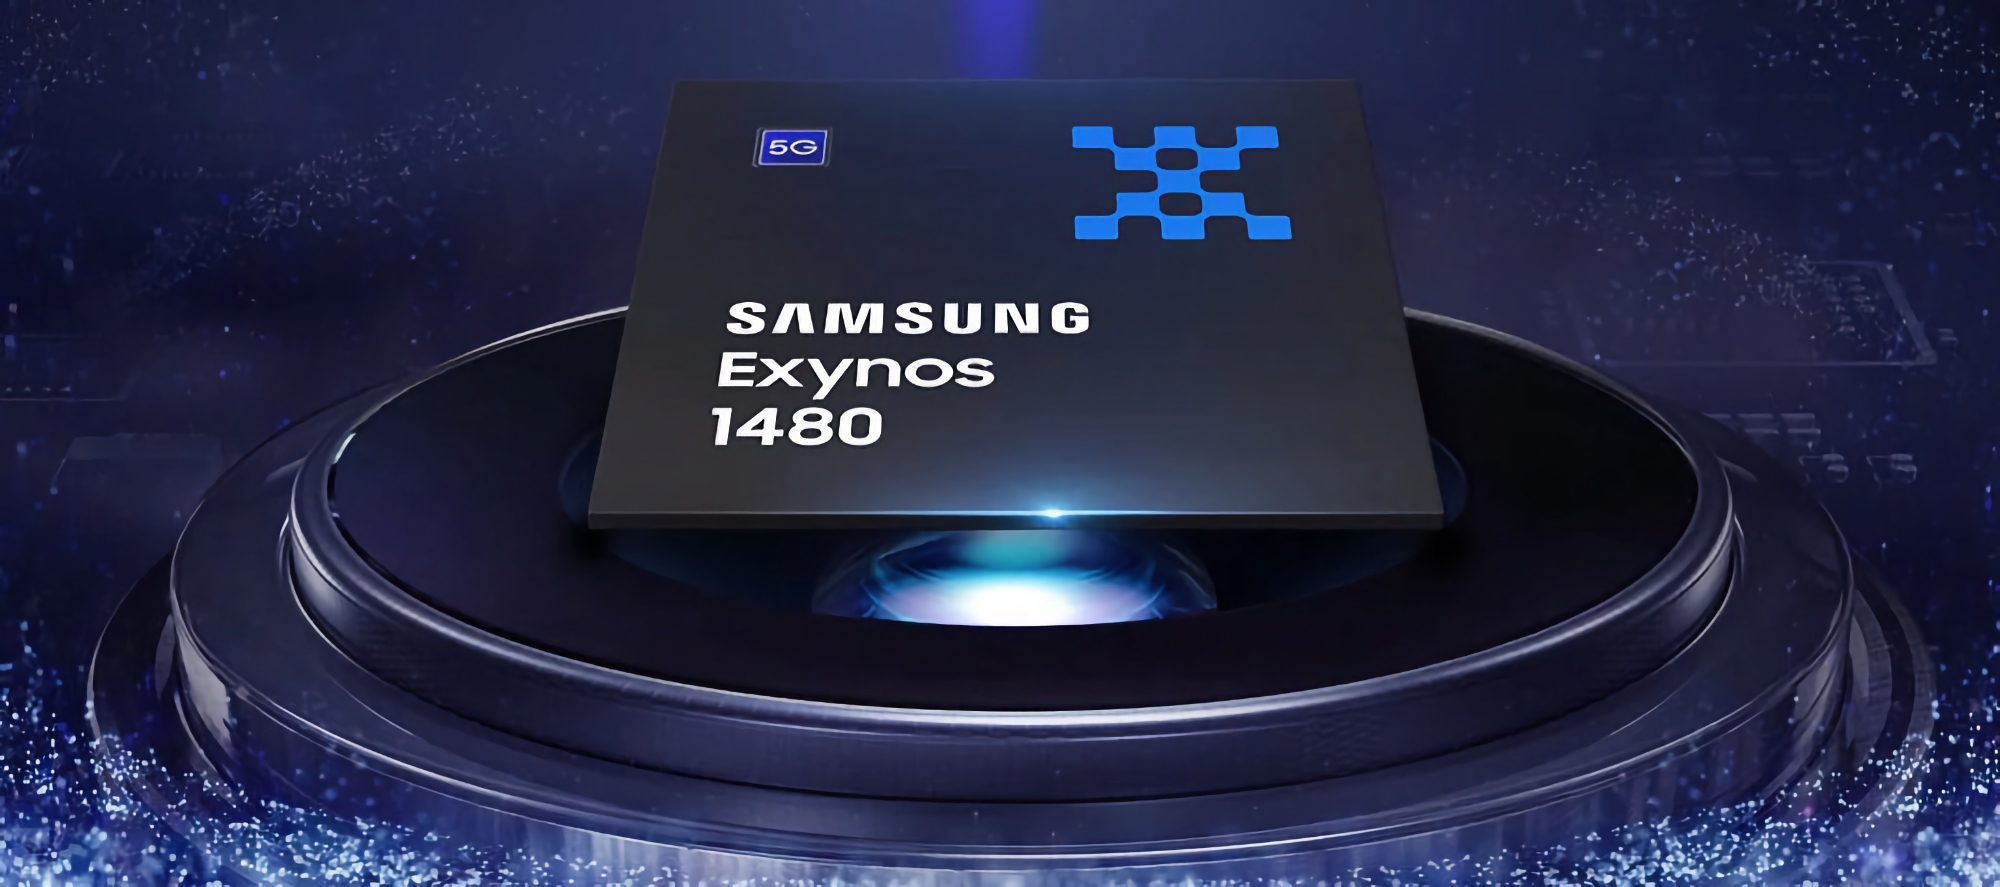 Samsung a révélé les spécifications de la puce Exynos 1480 : huit cœurs, 4 nanomètres et une carte graphique Xclipse 530 avec l'architecture AMD RDNA 2.